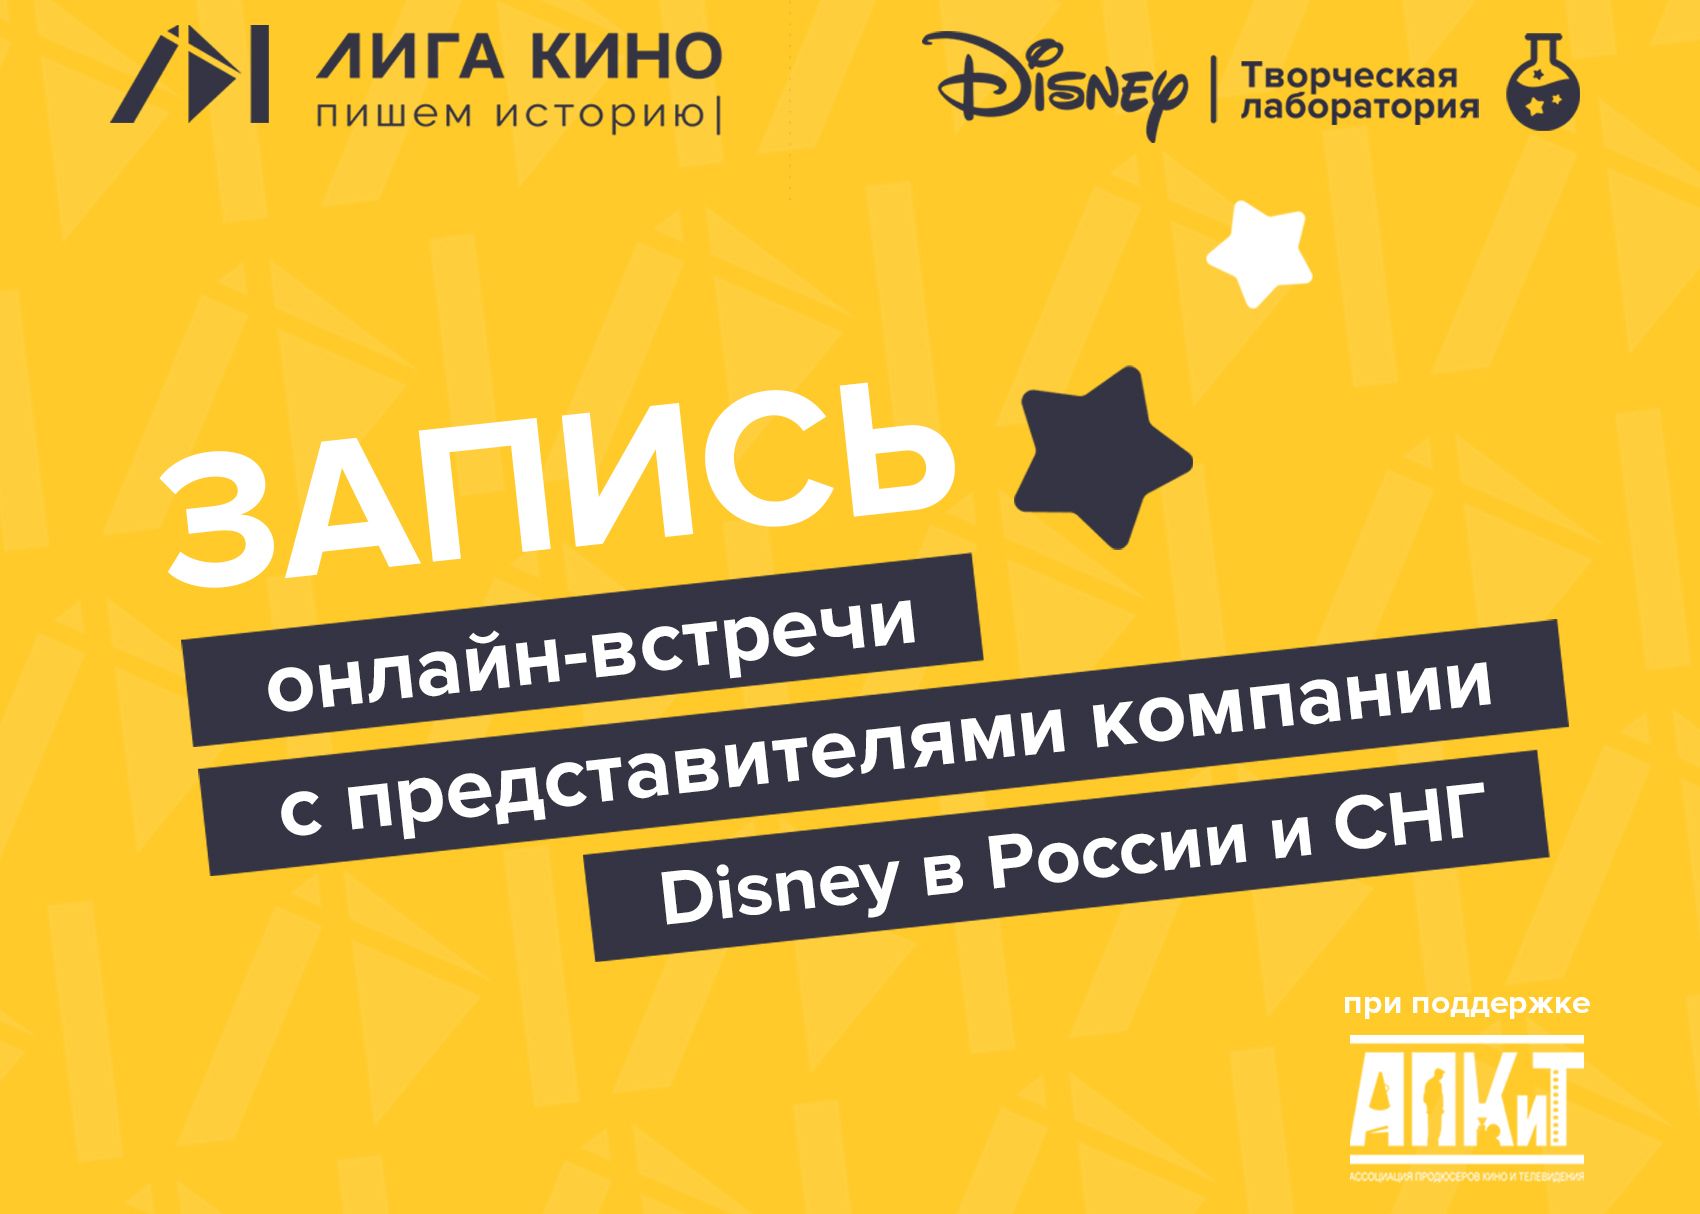 Запись онлайн-встречи с представителями компании Disney в России и СНГ